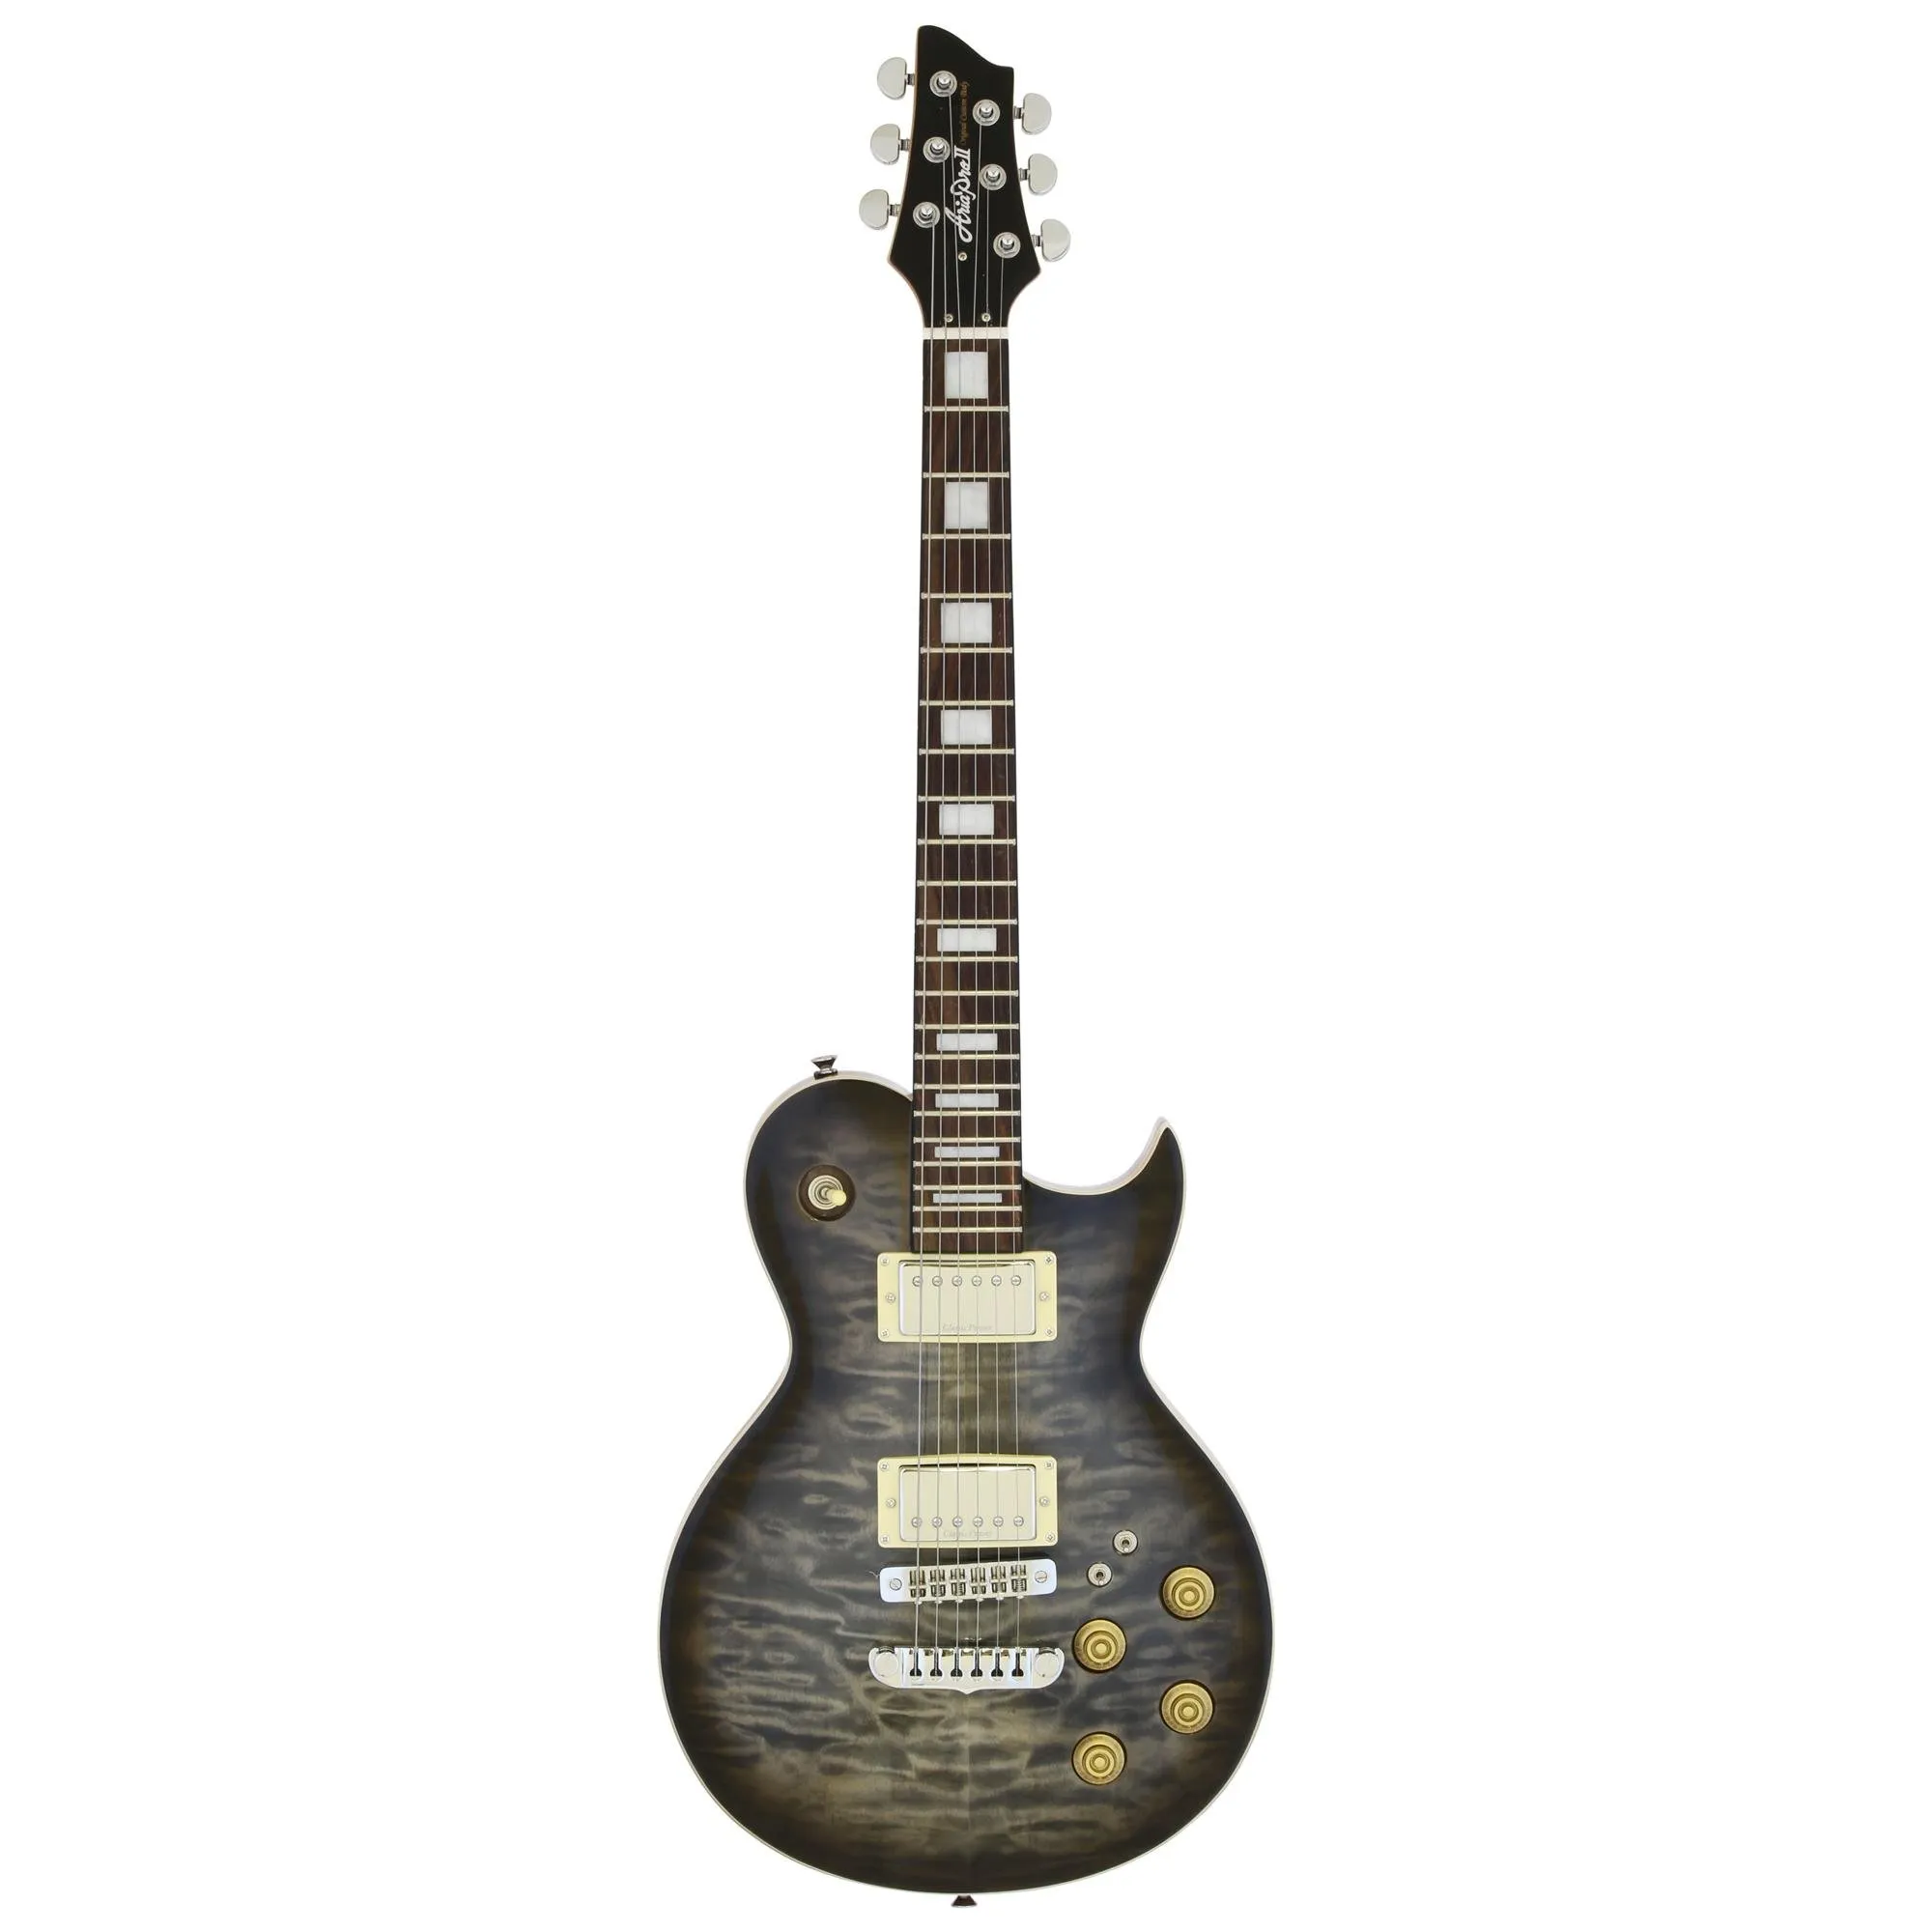 Guitarra Aria Pro II PE-480 See-Through Black Burst por 3.548,00 à vista no boleto/pix ou parcele em até 12x sem juros. Compre na loja Mundomax!